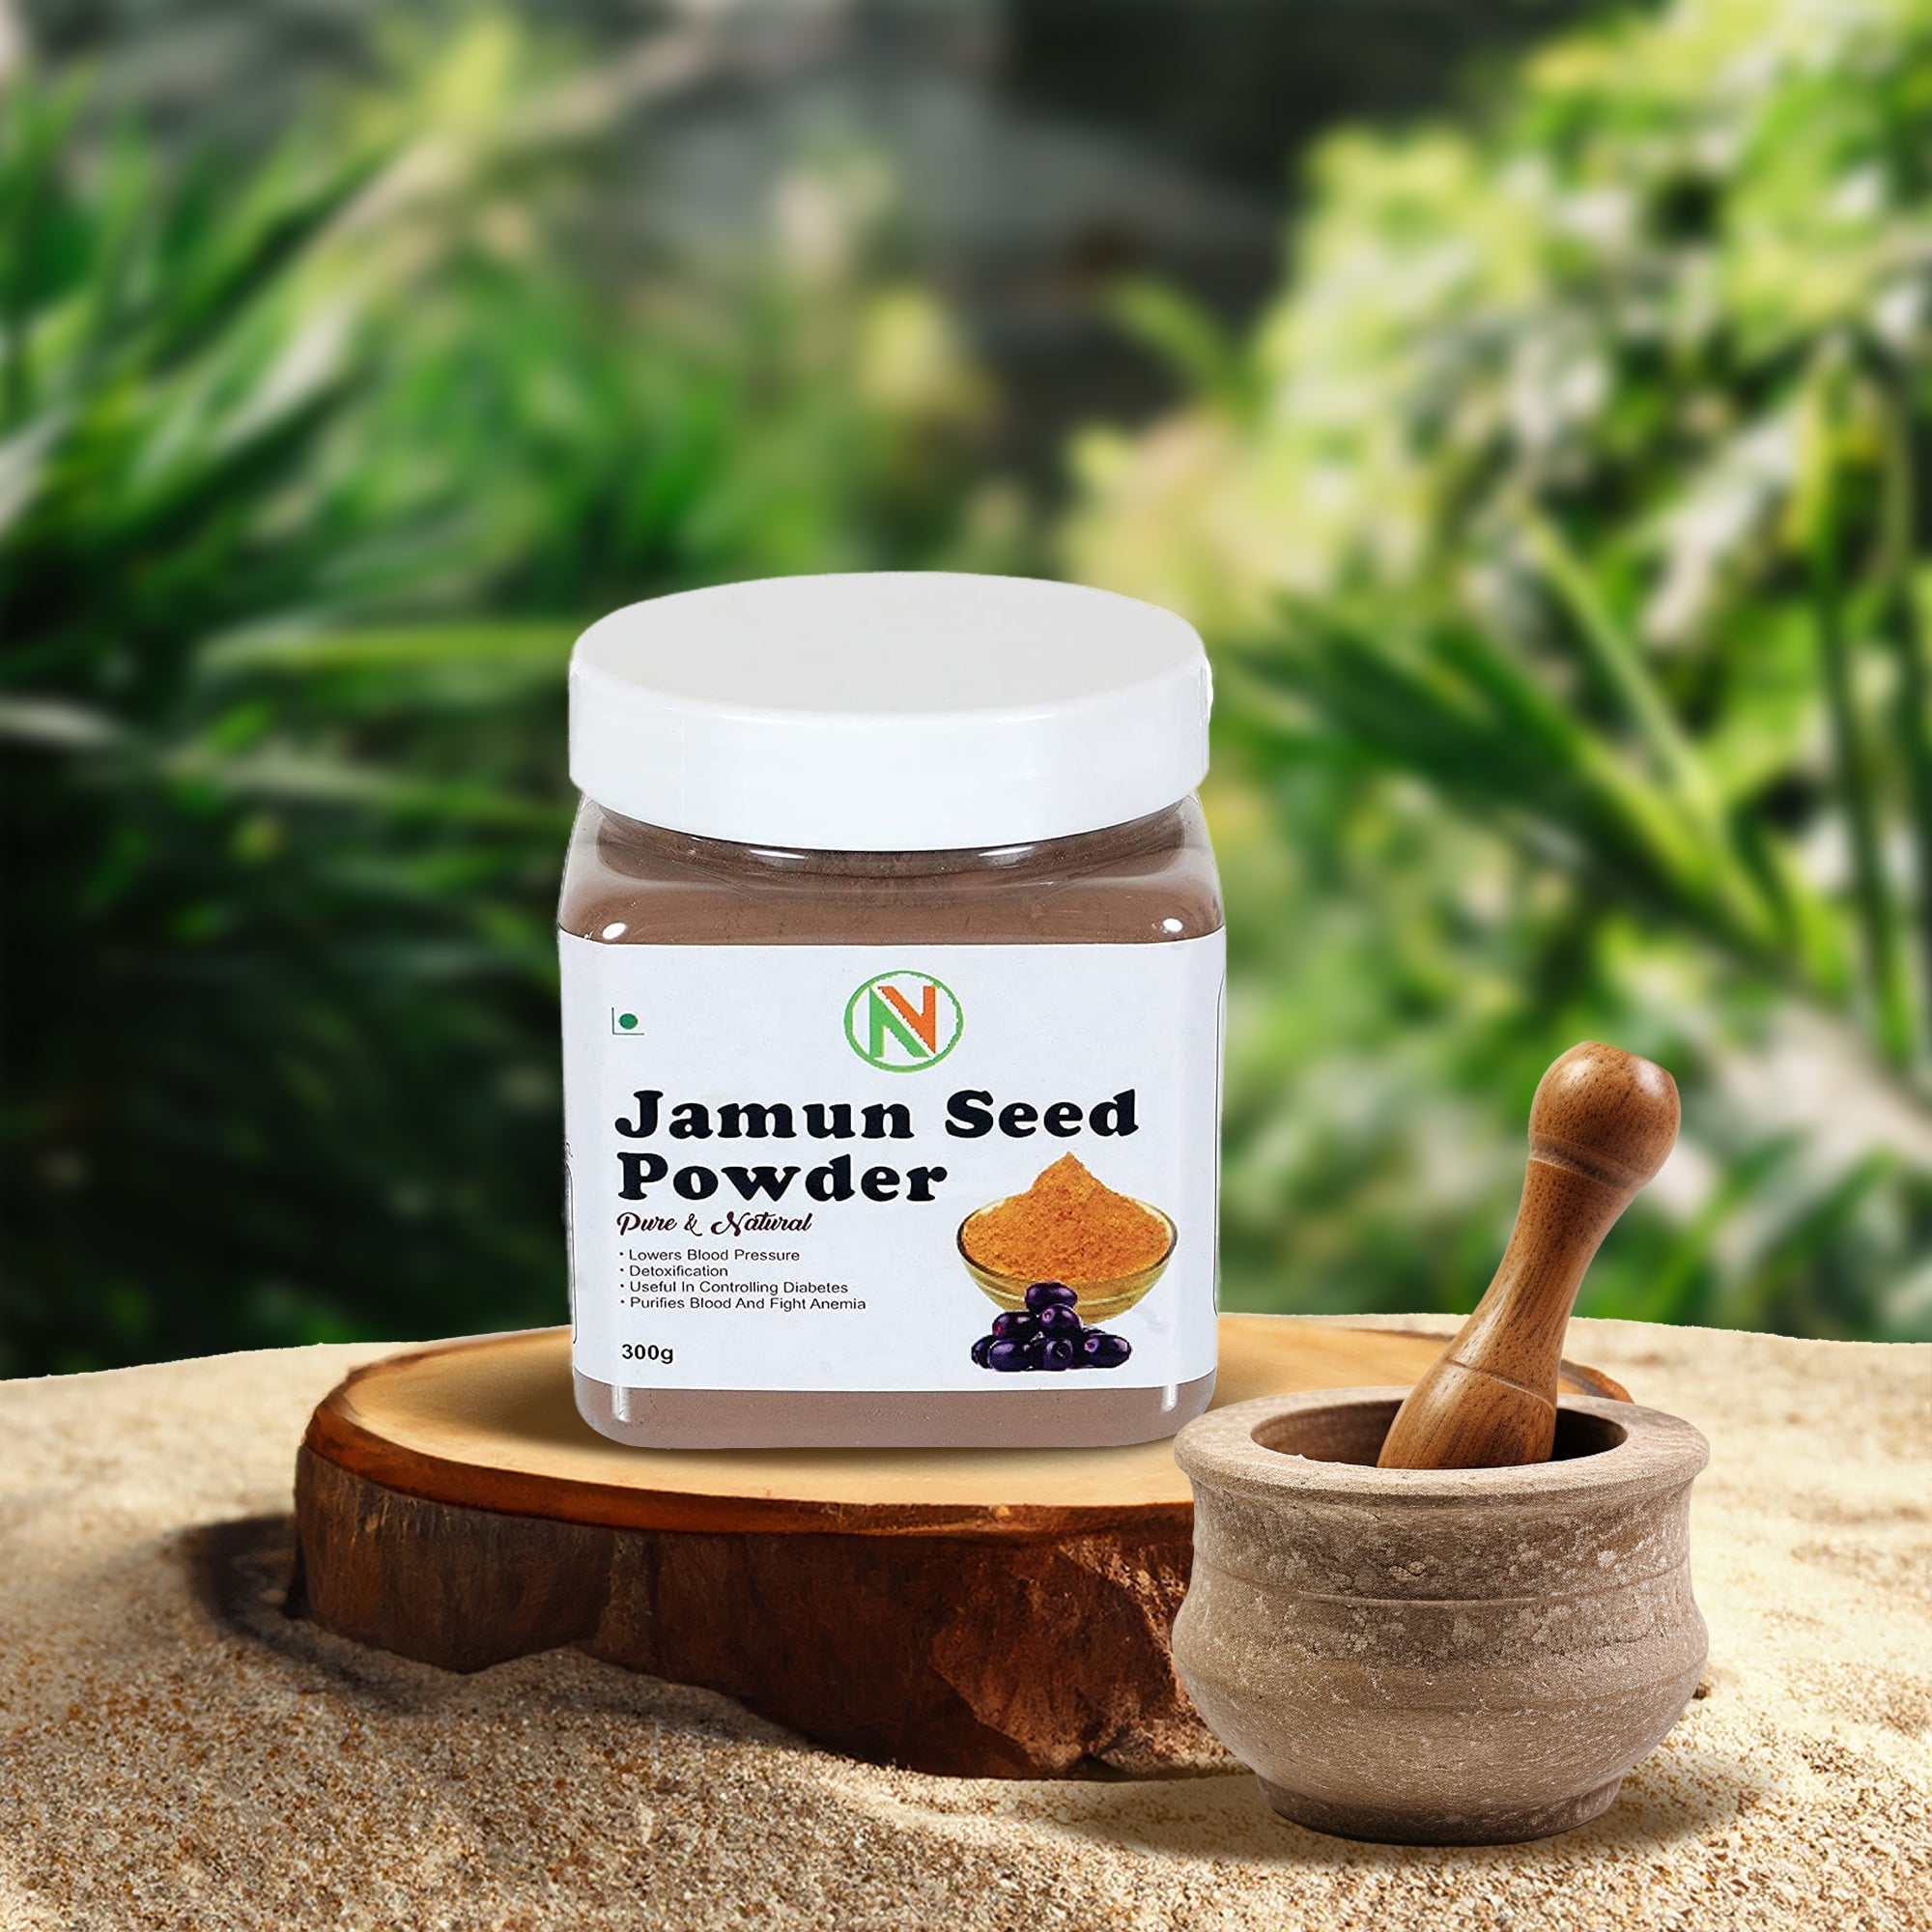 NatureVit Jamun Seed Powder For Diabetes